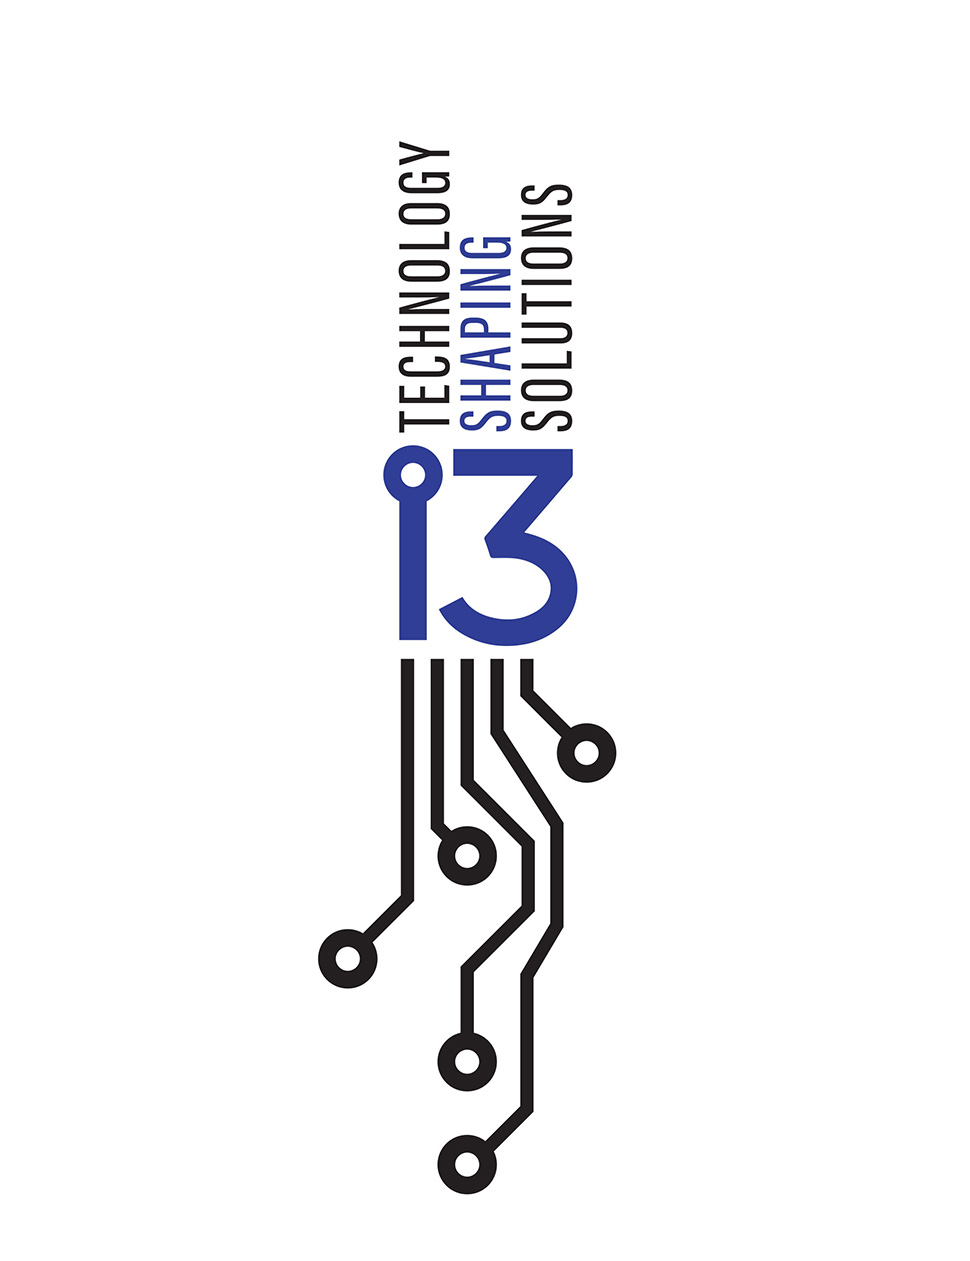 i3 Sales Conference Logo